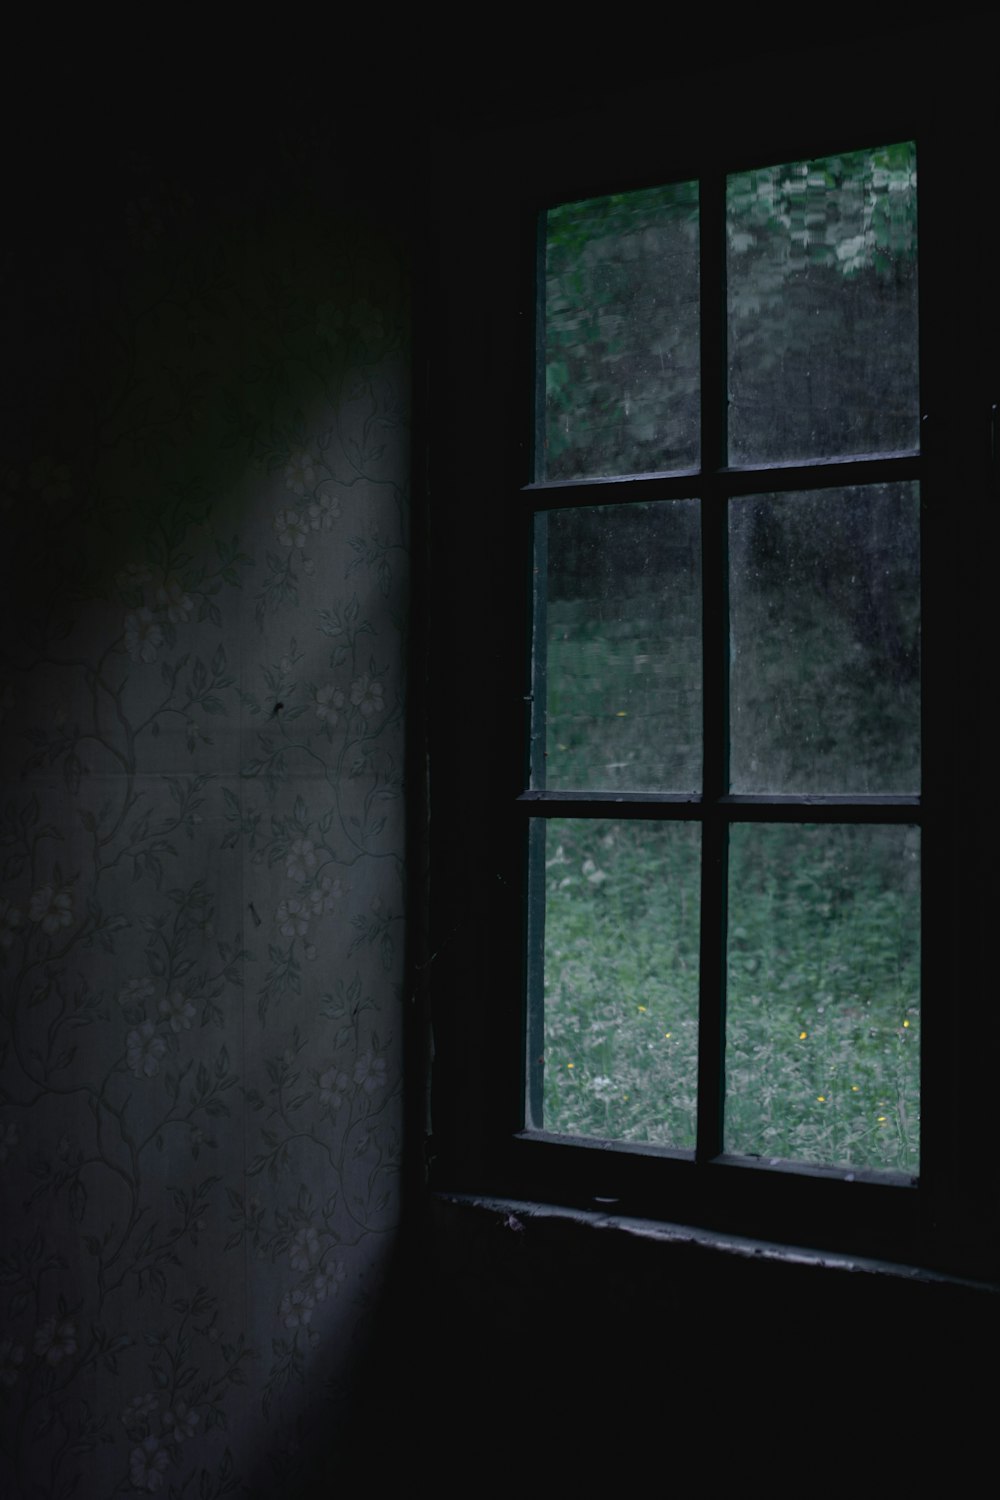 una finestra in una stanza buia con un muro tappezzato